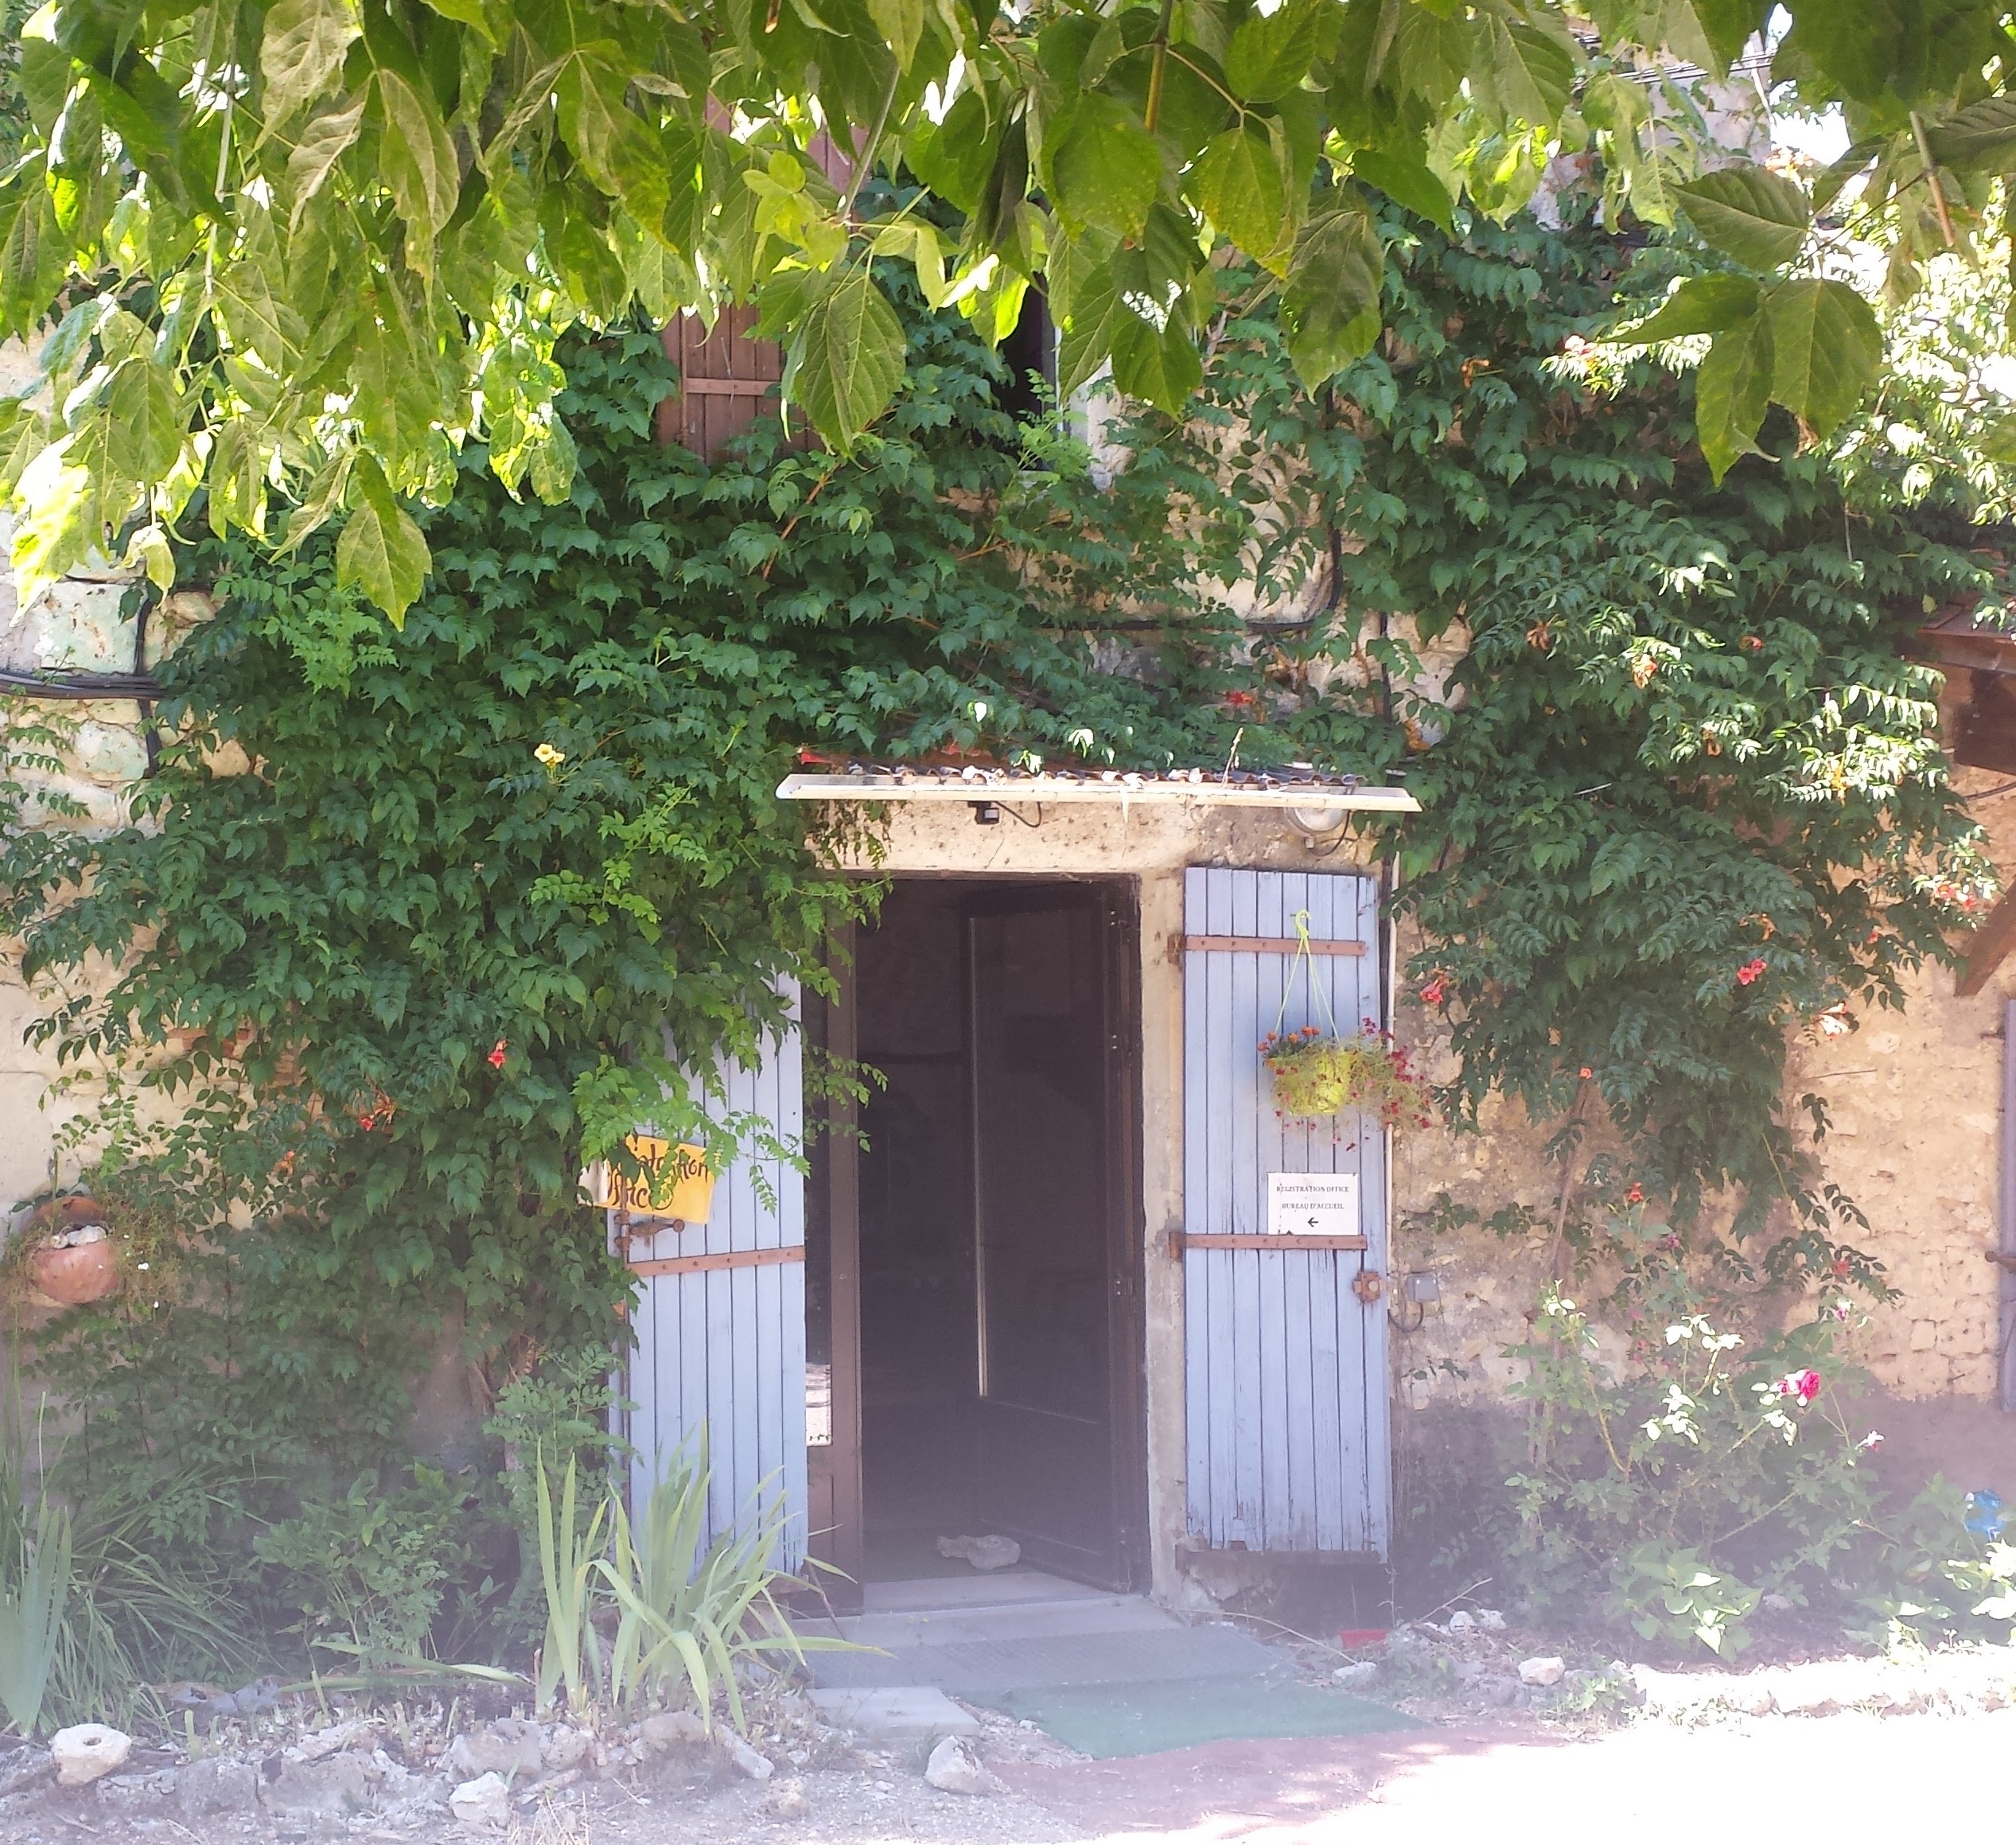 Das BIld zeigt eine offene Tür zu einem bewachsenen Steinhaus